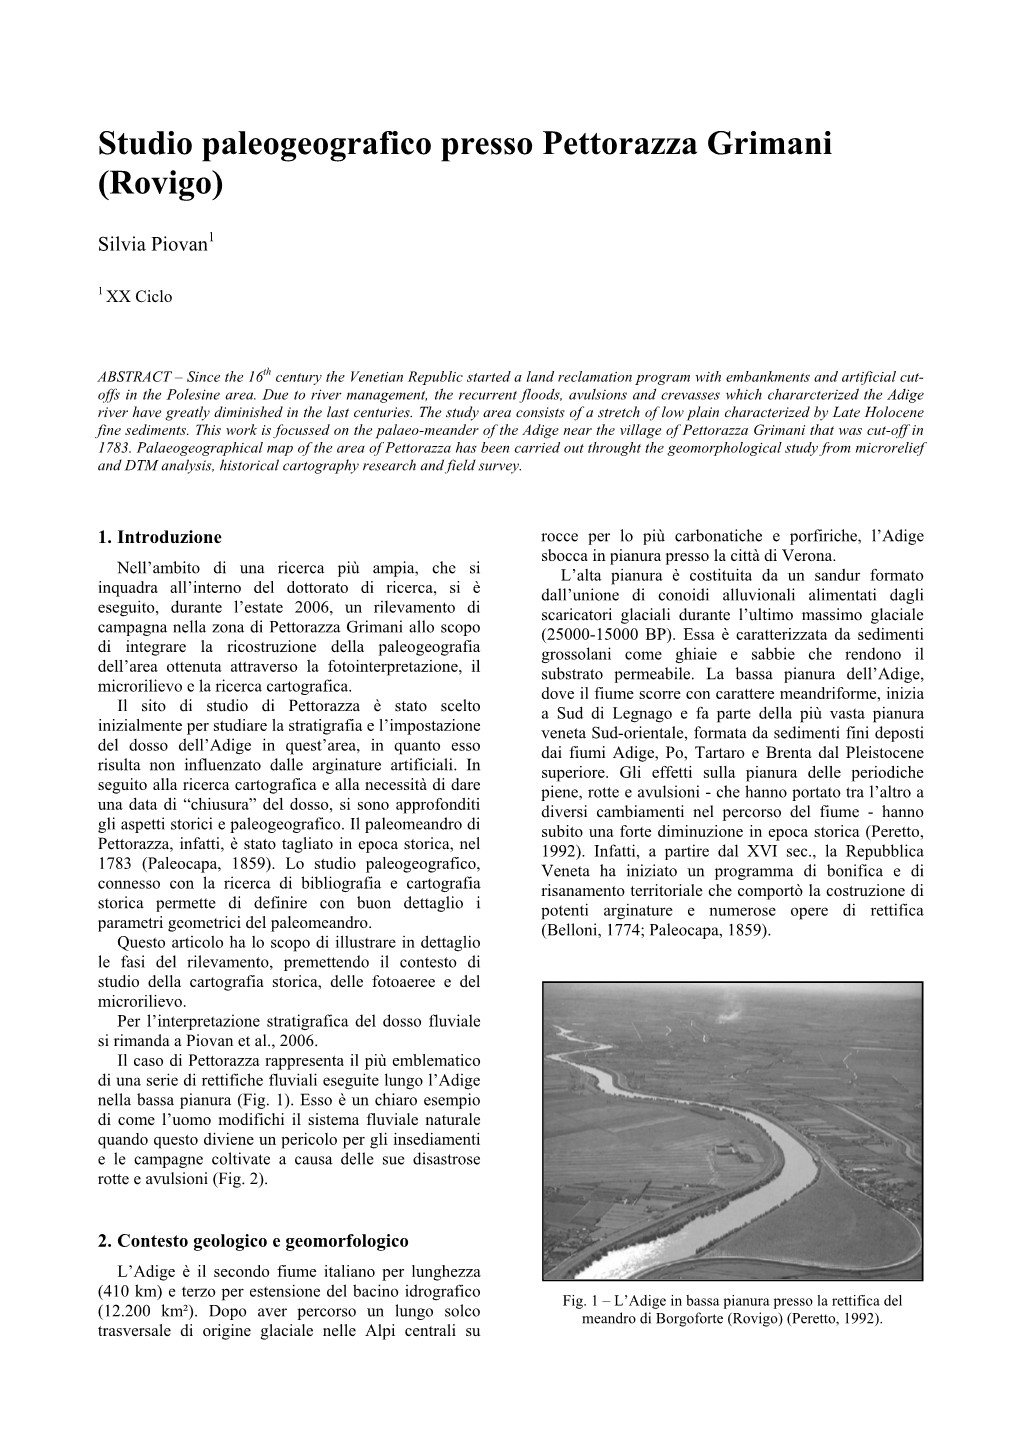 Studio Paleogeografico Presso Pettorazza Grimani (Rovigo)